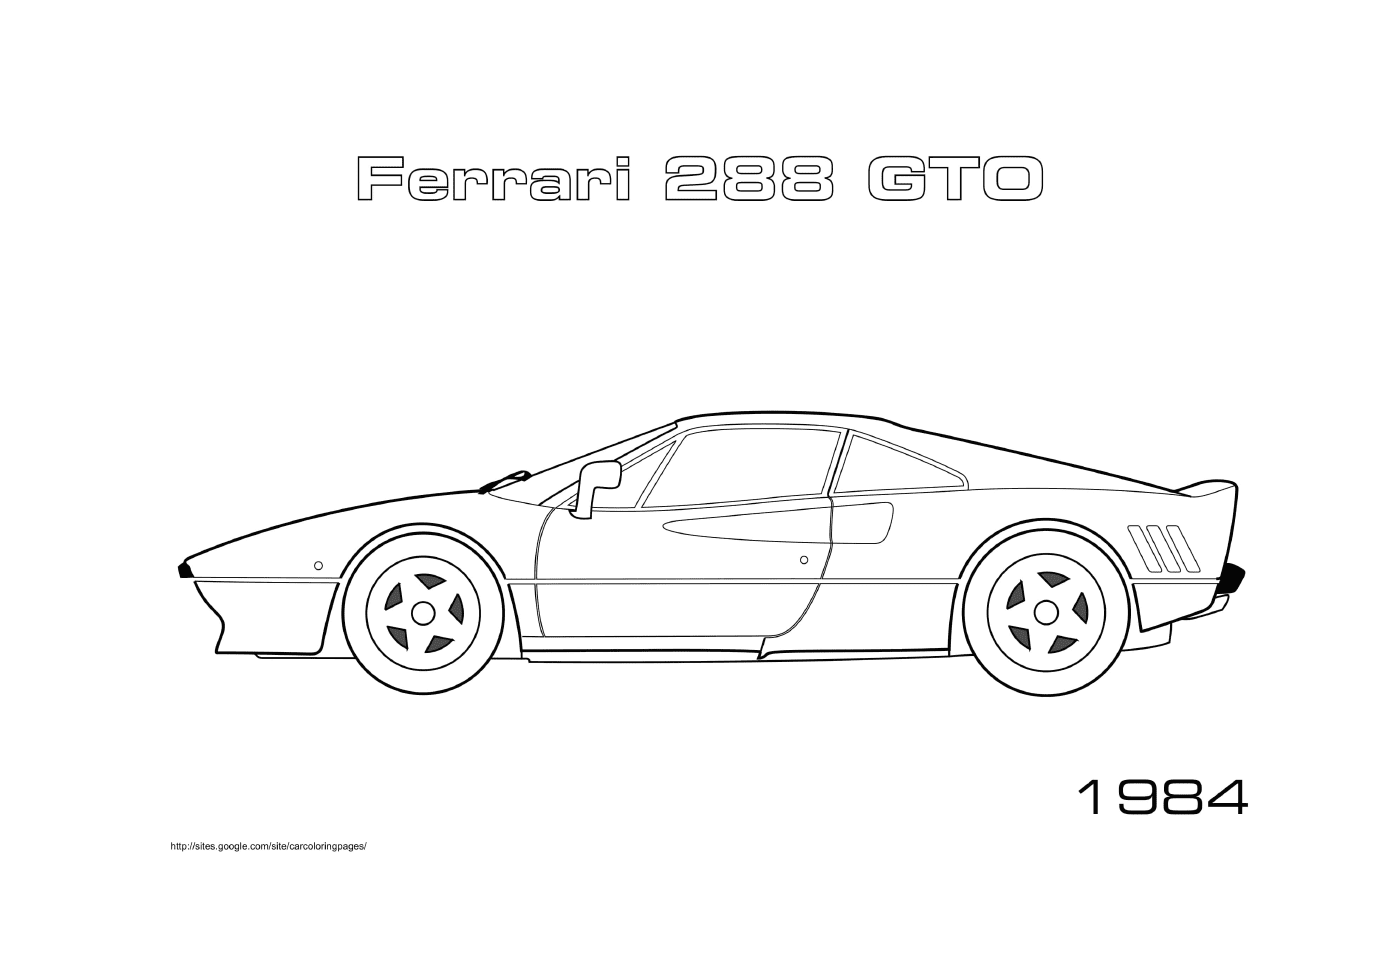  Ein Ferrari 288 GTO 1984 